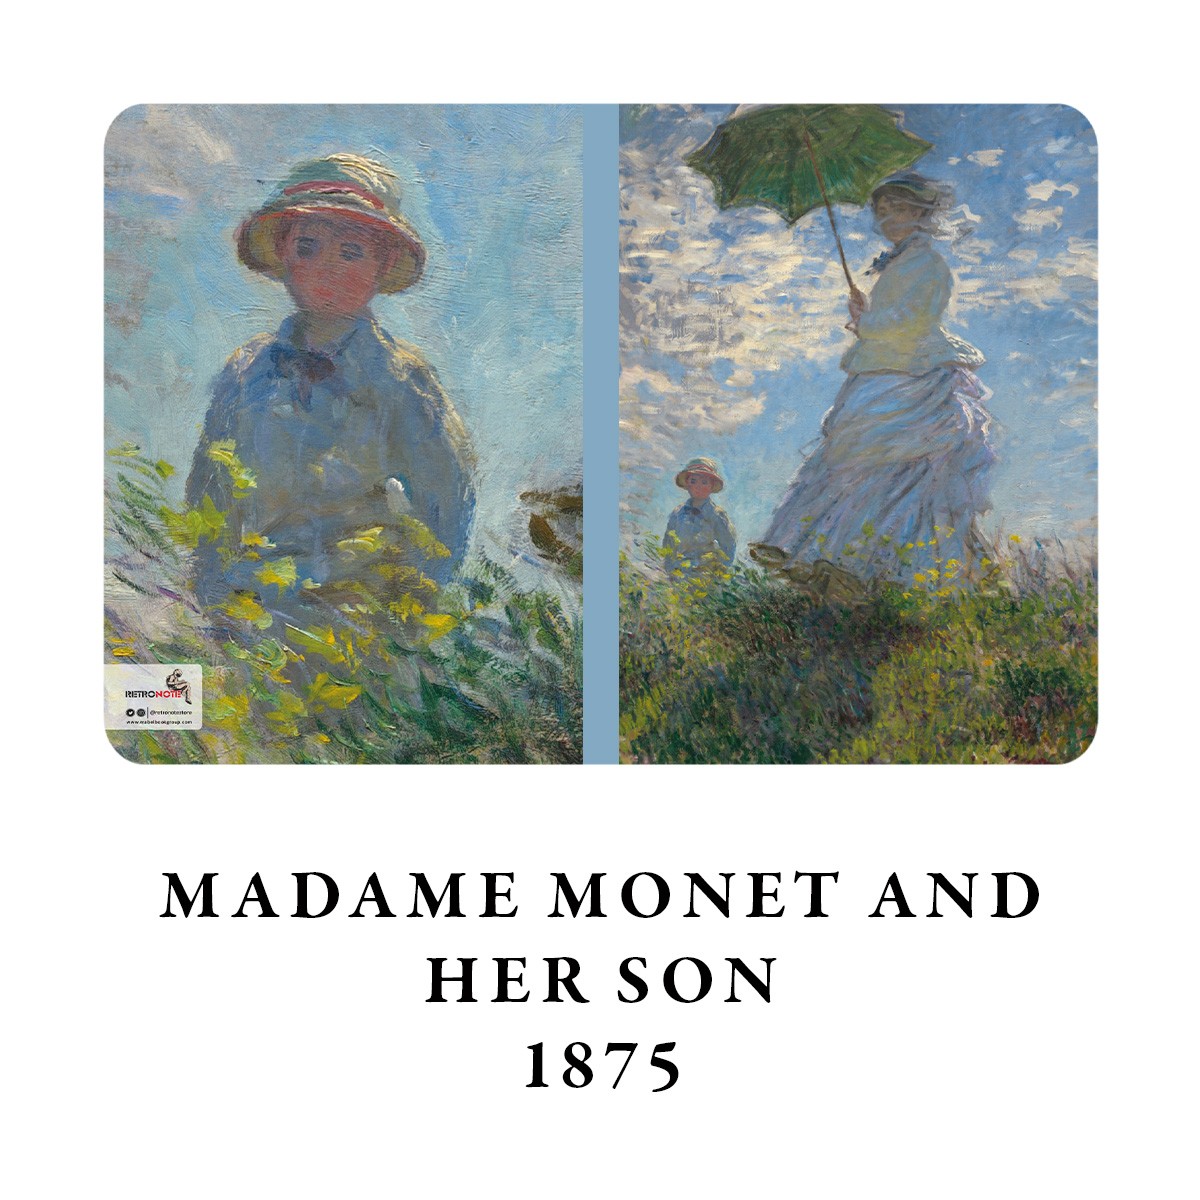 Madam Monet and Her Son / Claude Monet, 1875 / A4 Defter -10